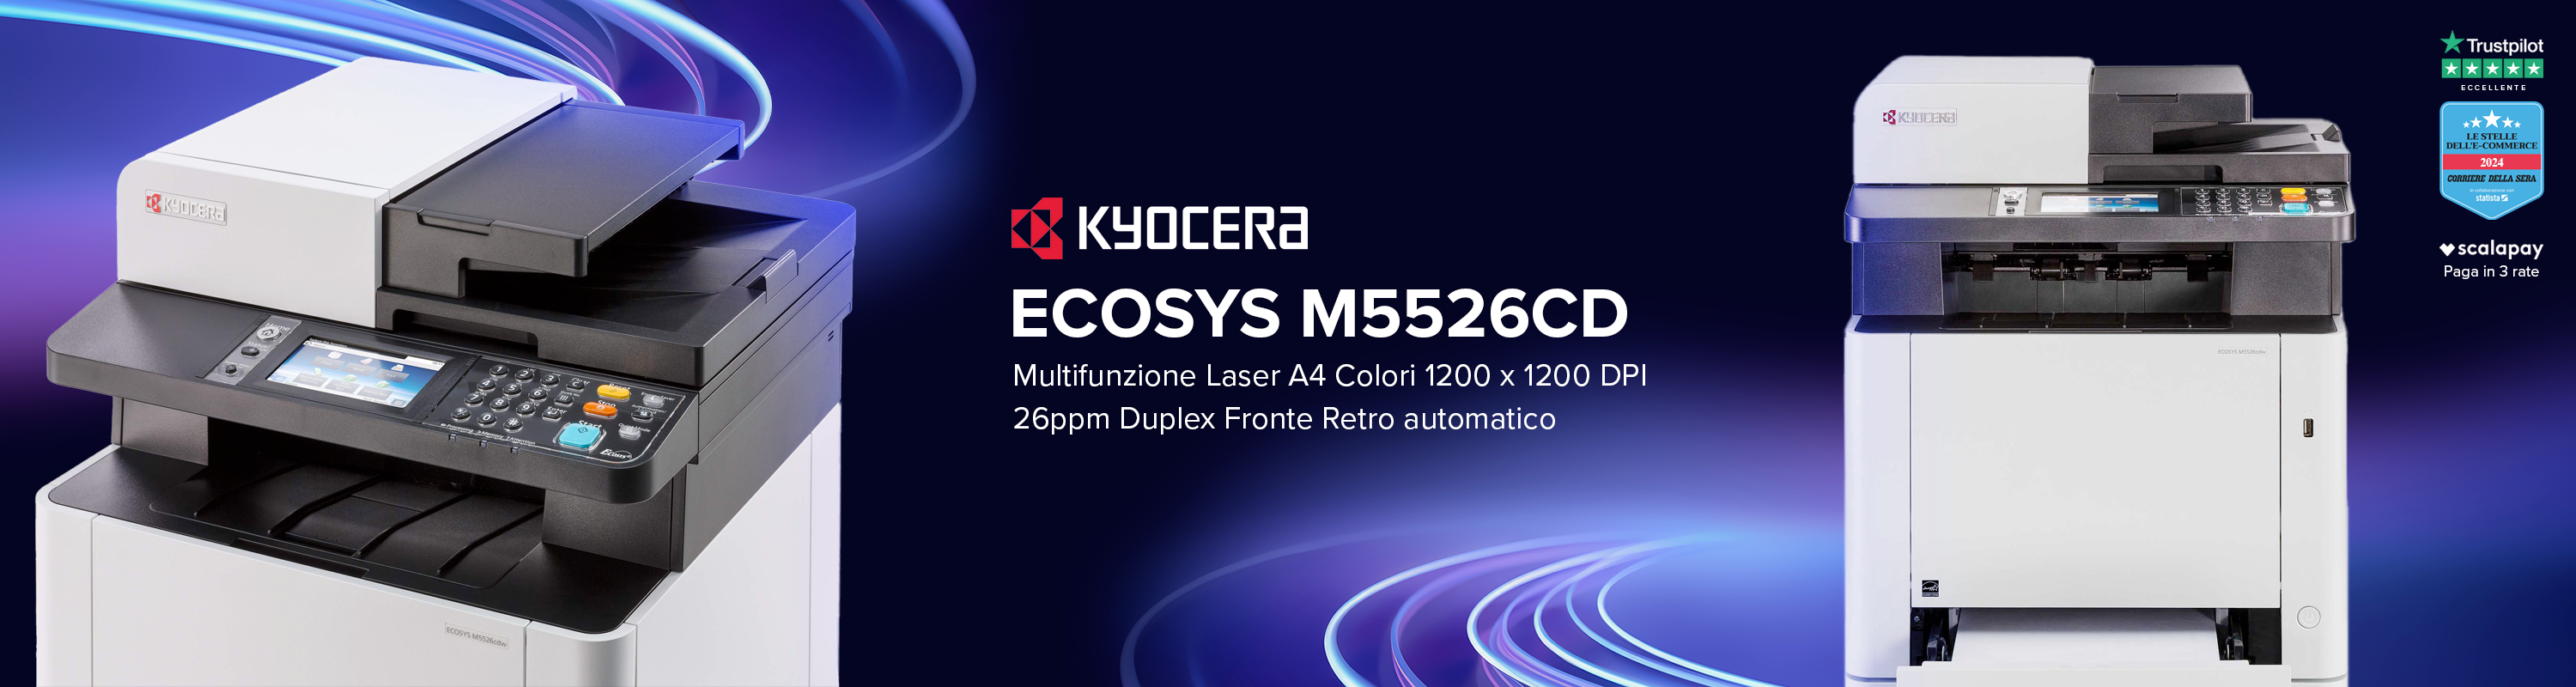 KYOCERA ECOSYS M5526cd